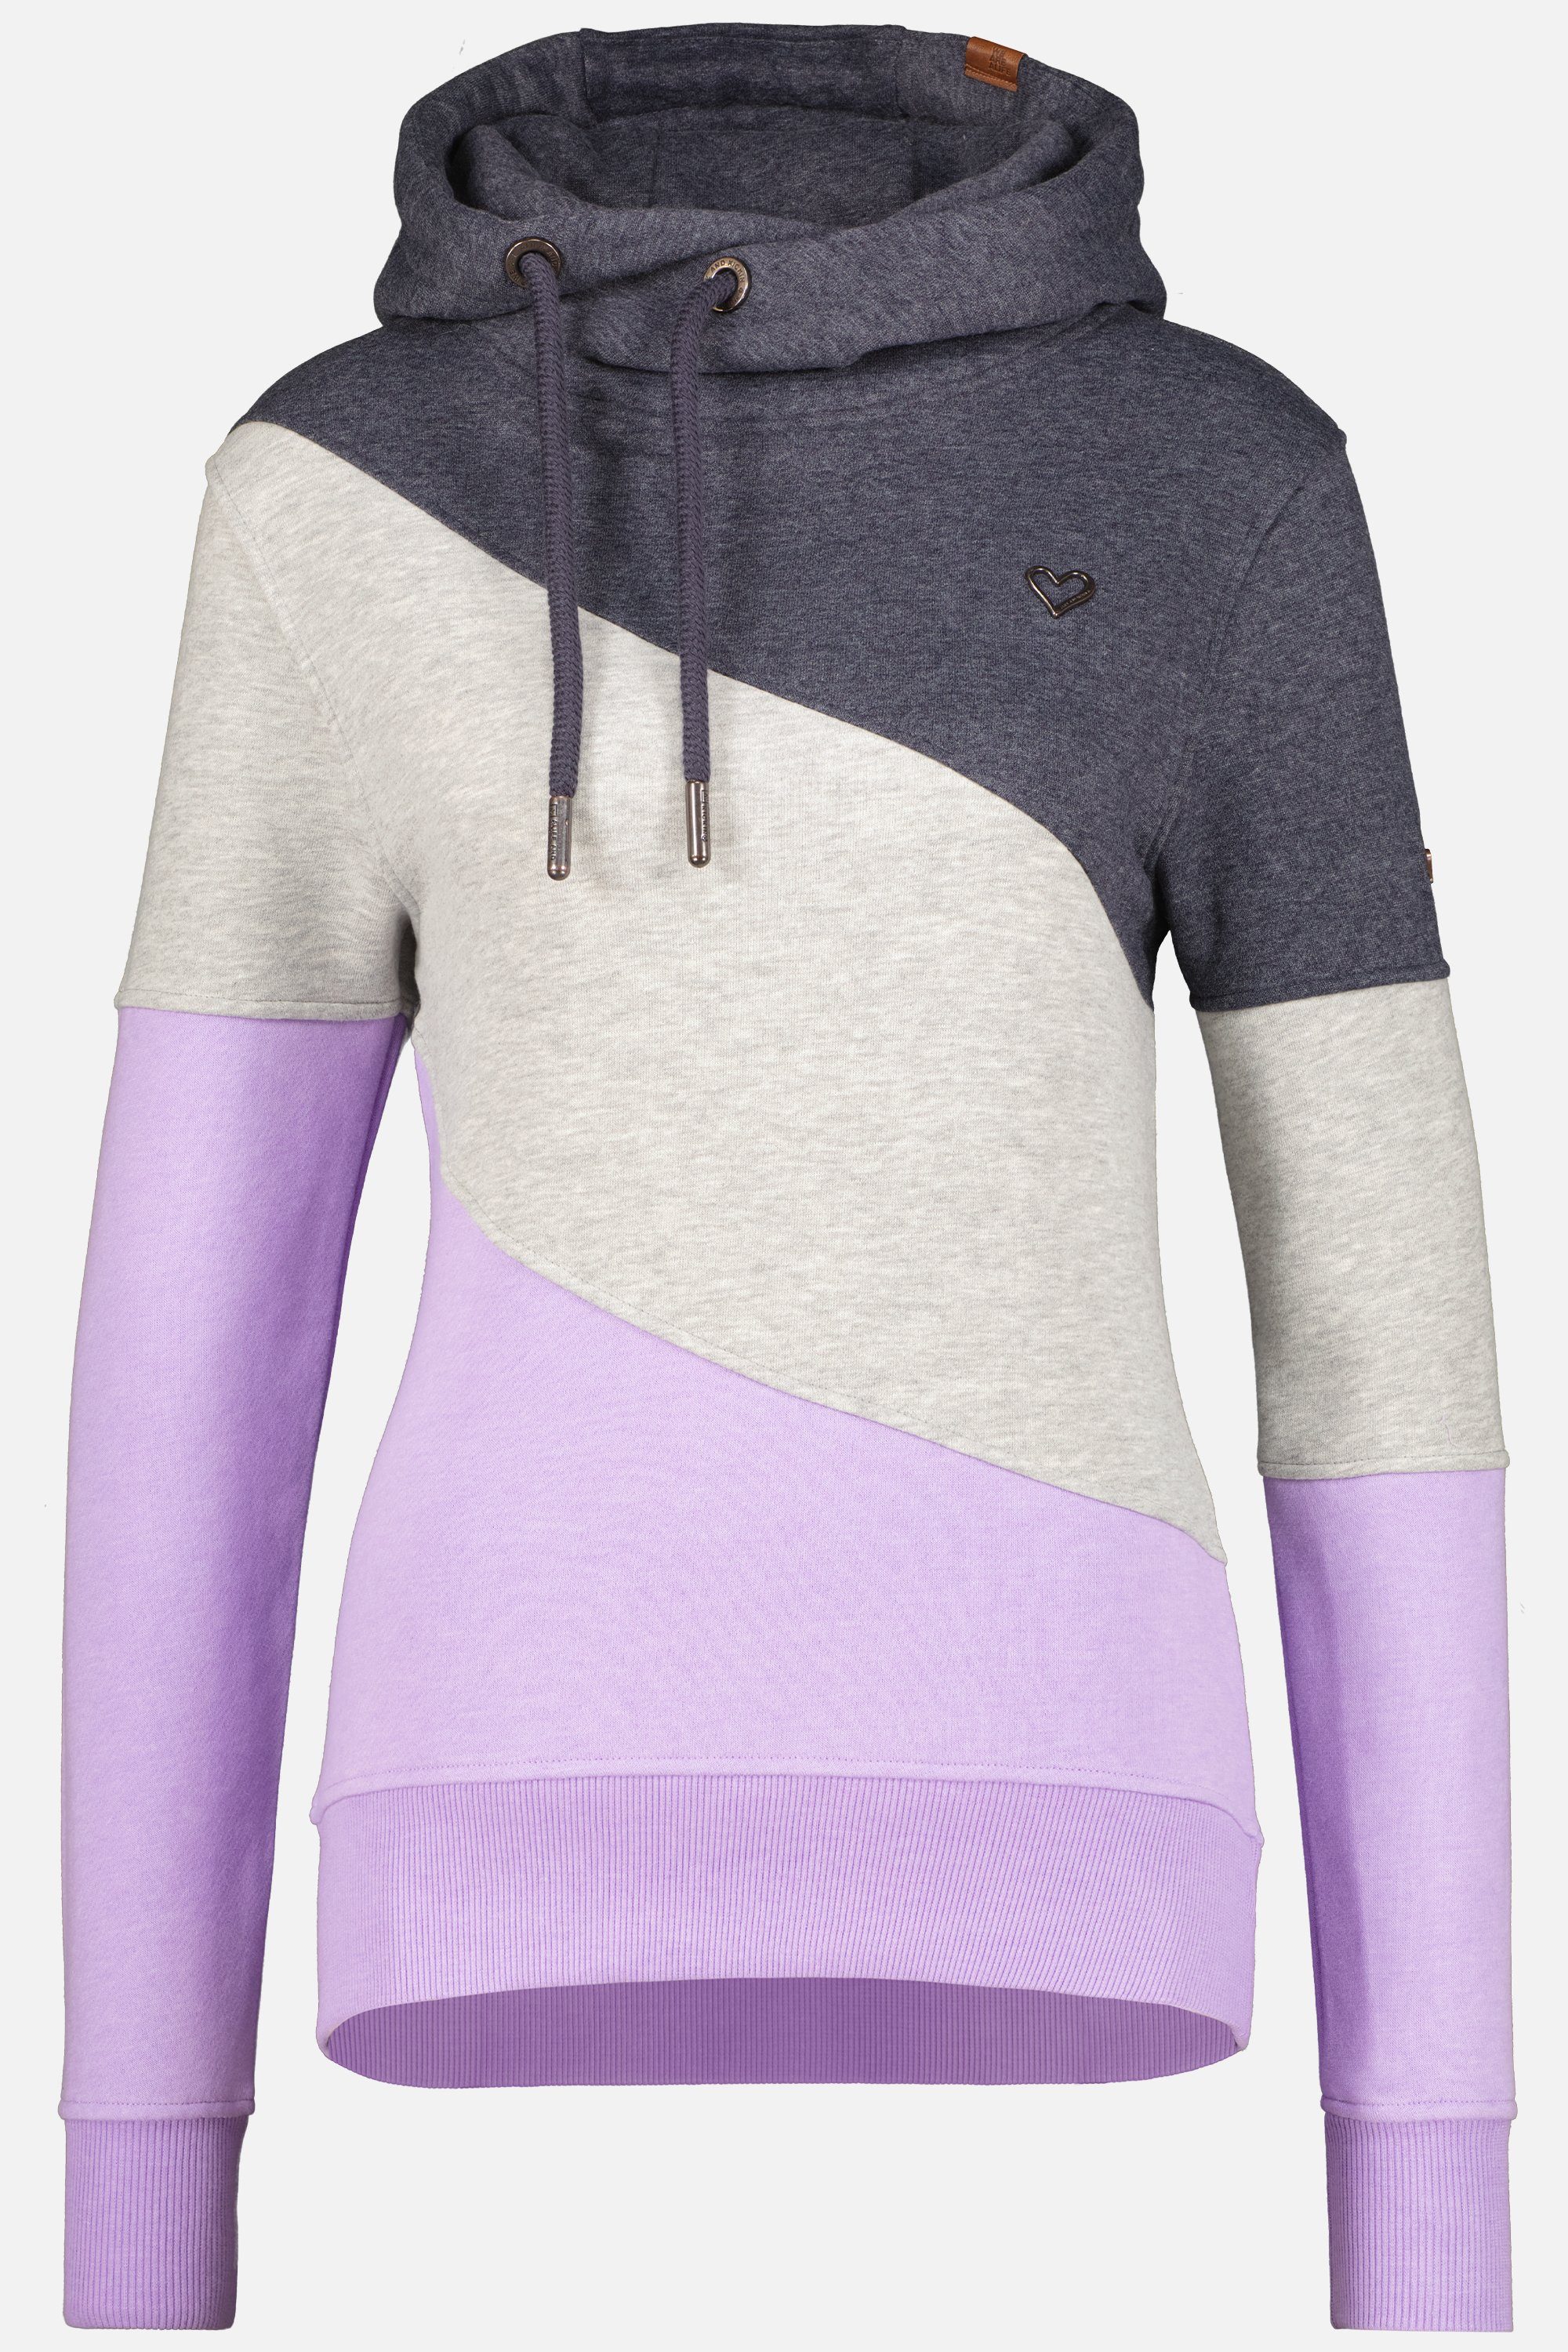 Alife & Kickin Kapuzensweatshirt StacyAK A Hoodie Sweatshirt Damen Kapuzensweatshirt, Pullover digital lavender melange